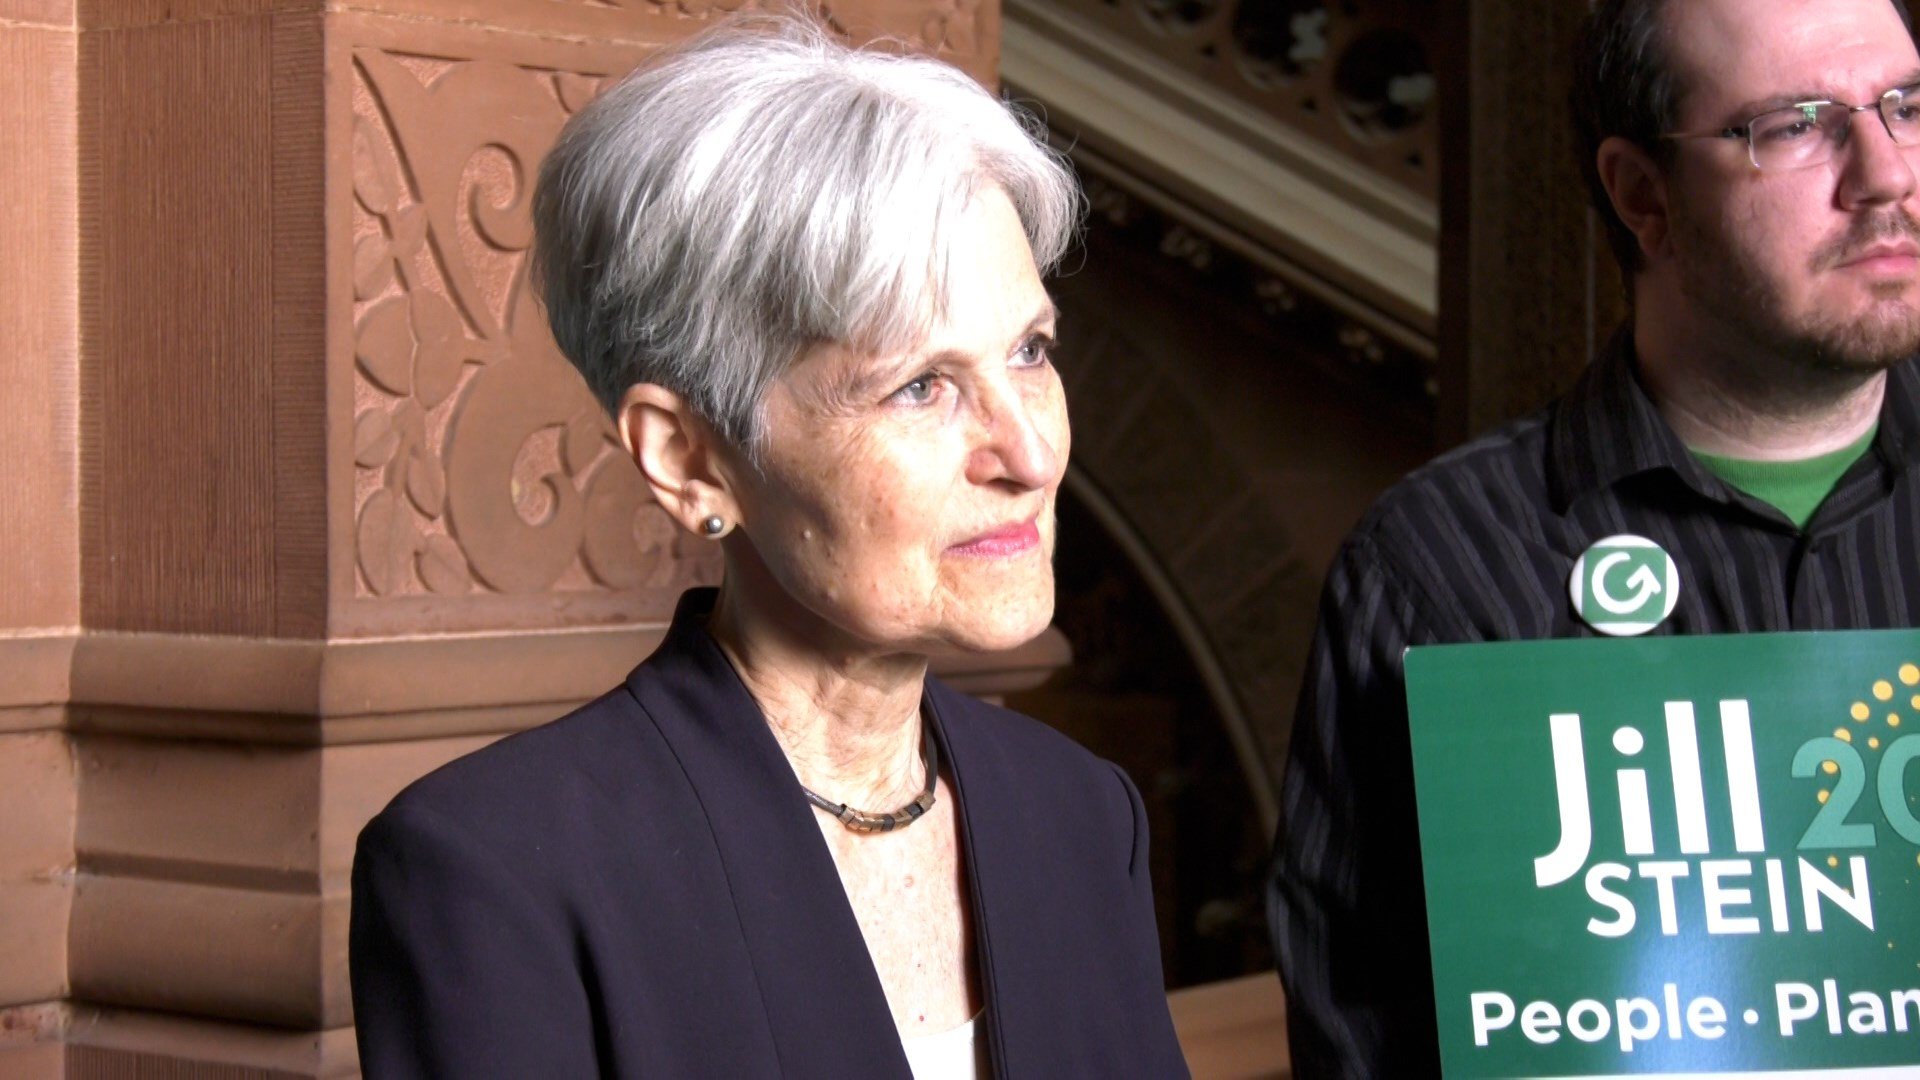 Jill Stein launches her New York ballot access drive